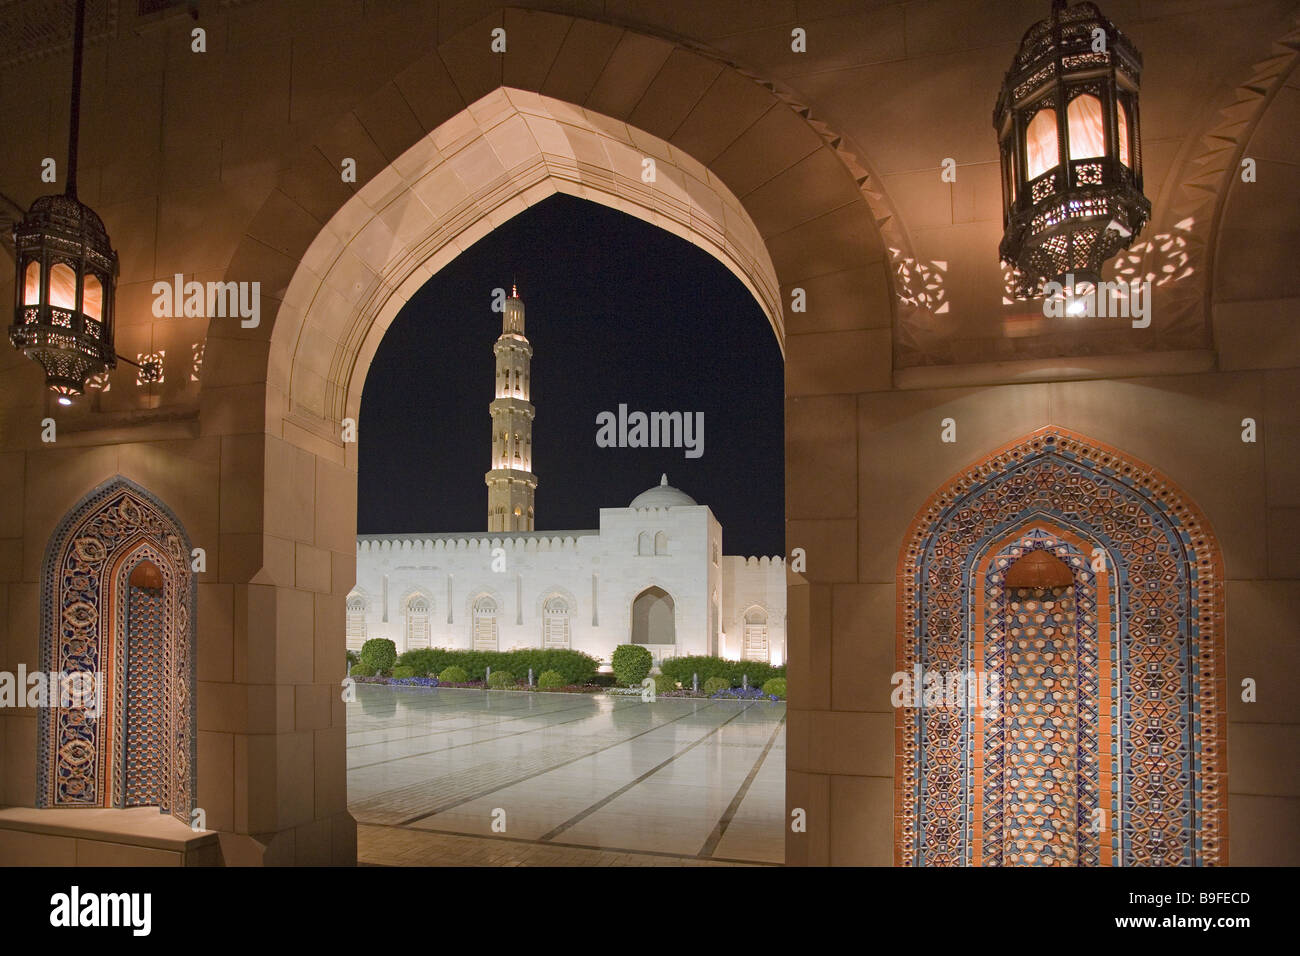 Oman Muscat Sultan Kaboos Moschee Beleuchtung abends Detail Sultanat Bau Palast-Palastbauten Runde Bogen Torbogen Stockfoto